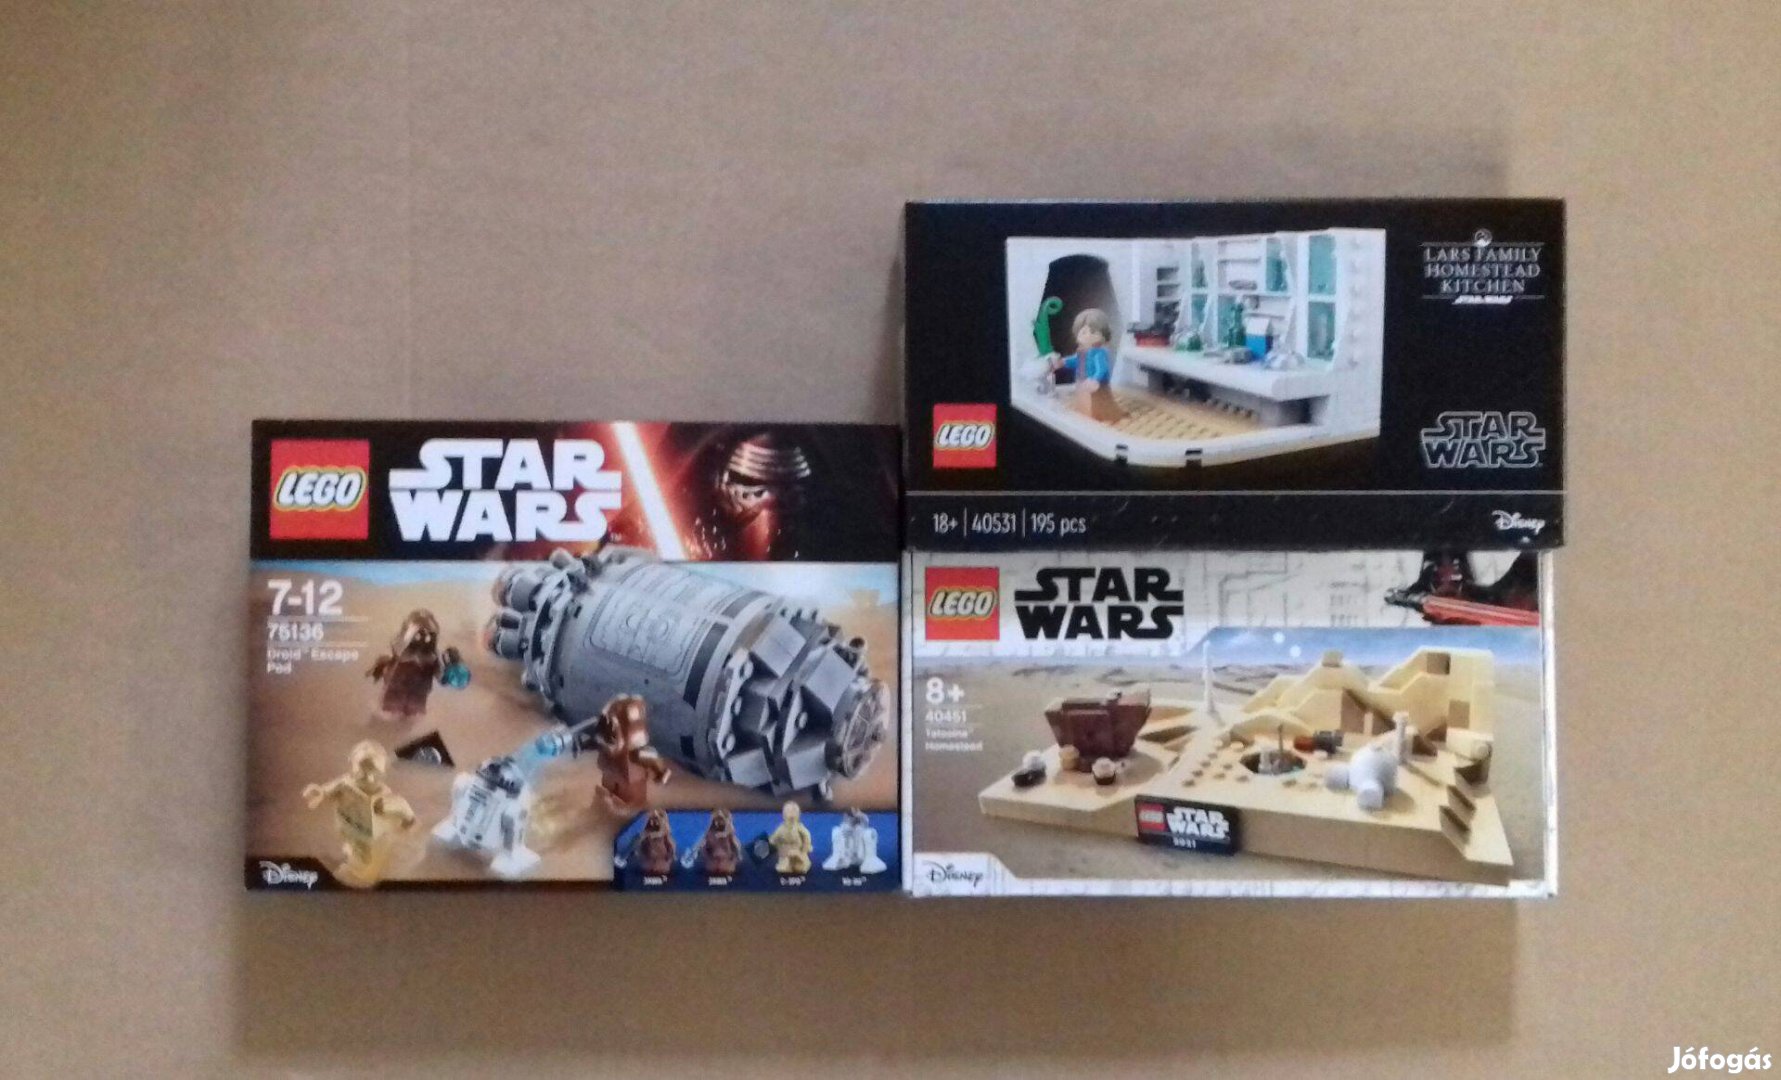 Egy új remény bontatlan Star Wars LEGO 75136 + 40451 + 40531 Fox.árban